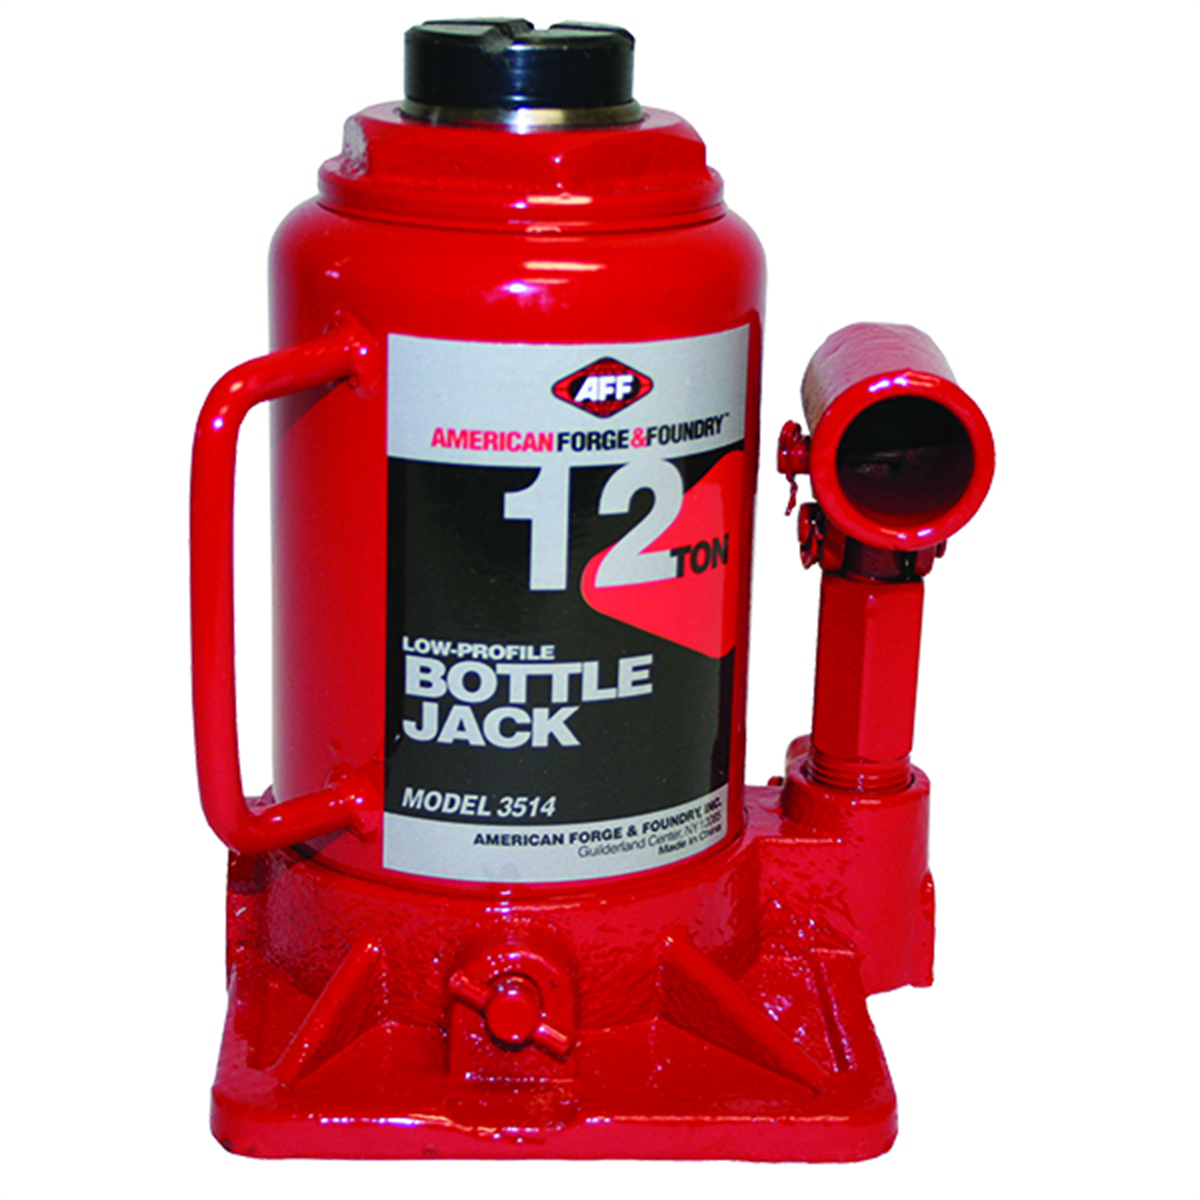 Bottle Jack, 12 Ton, Short Body, Range 7 to 13 Inches